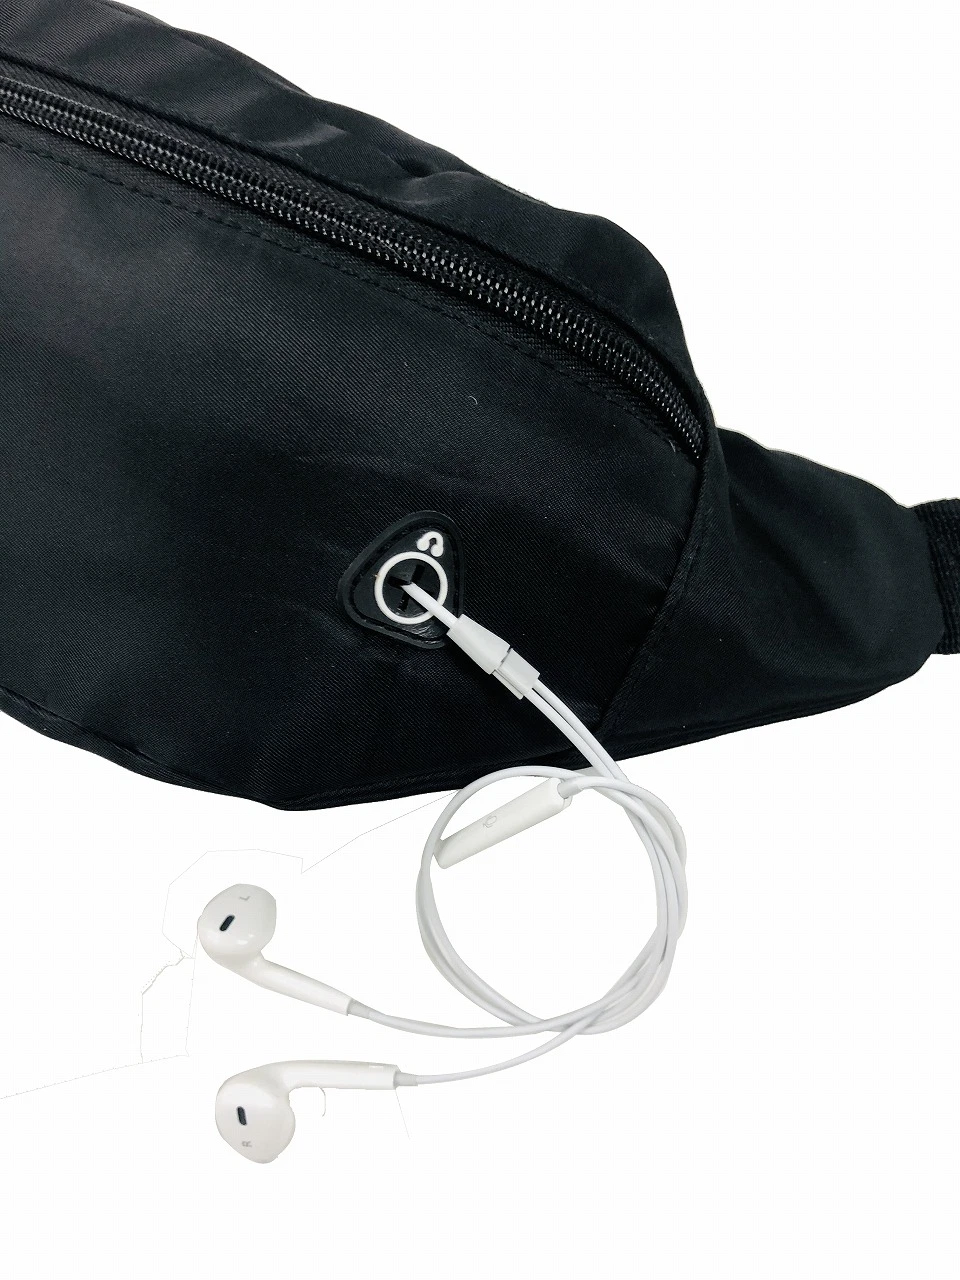 Waterproof Waist Pack Fanny Pack Belt Hip Bum Bag for Men Women